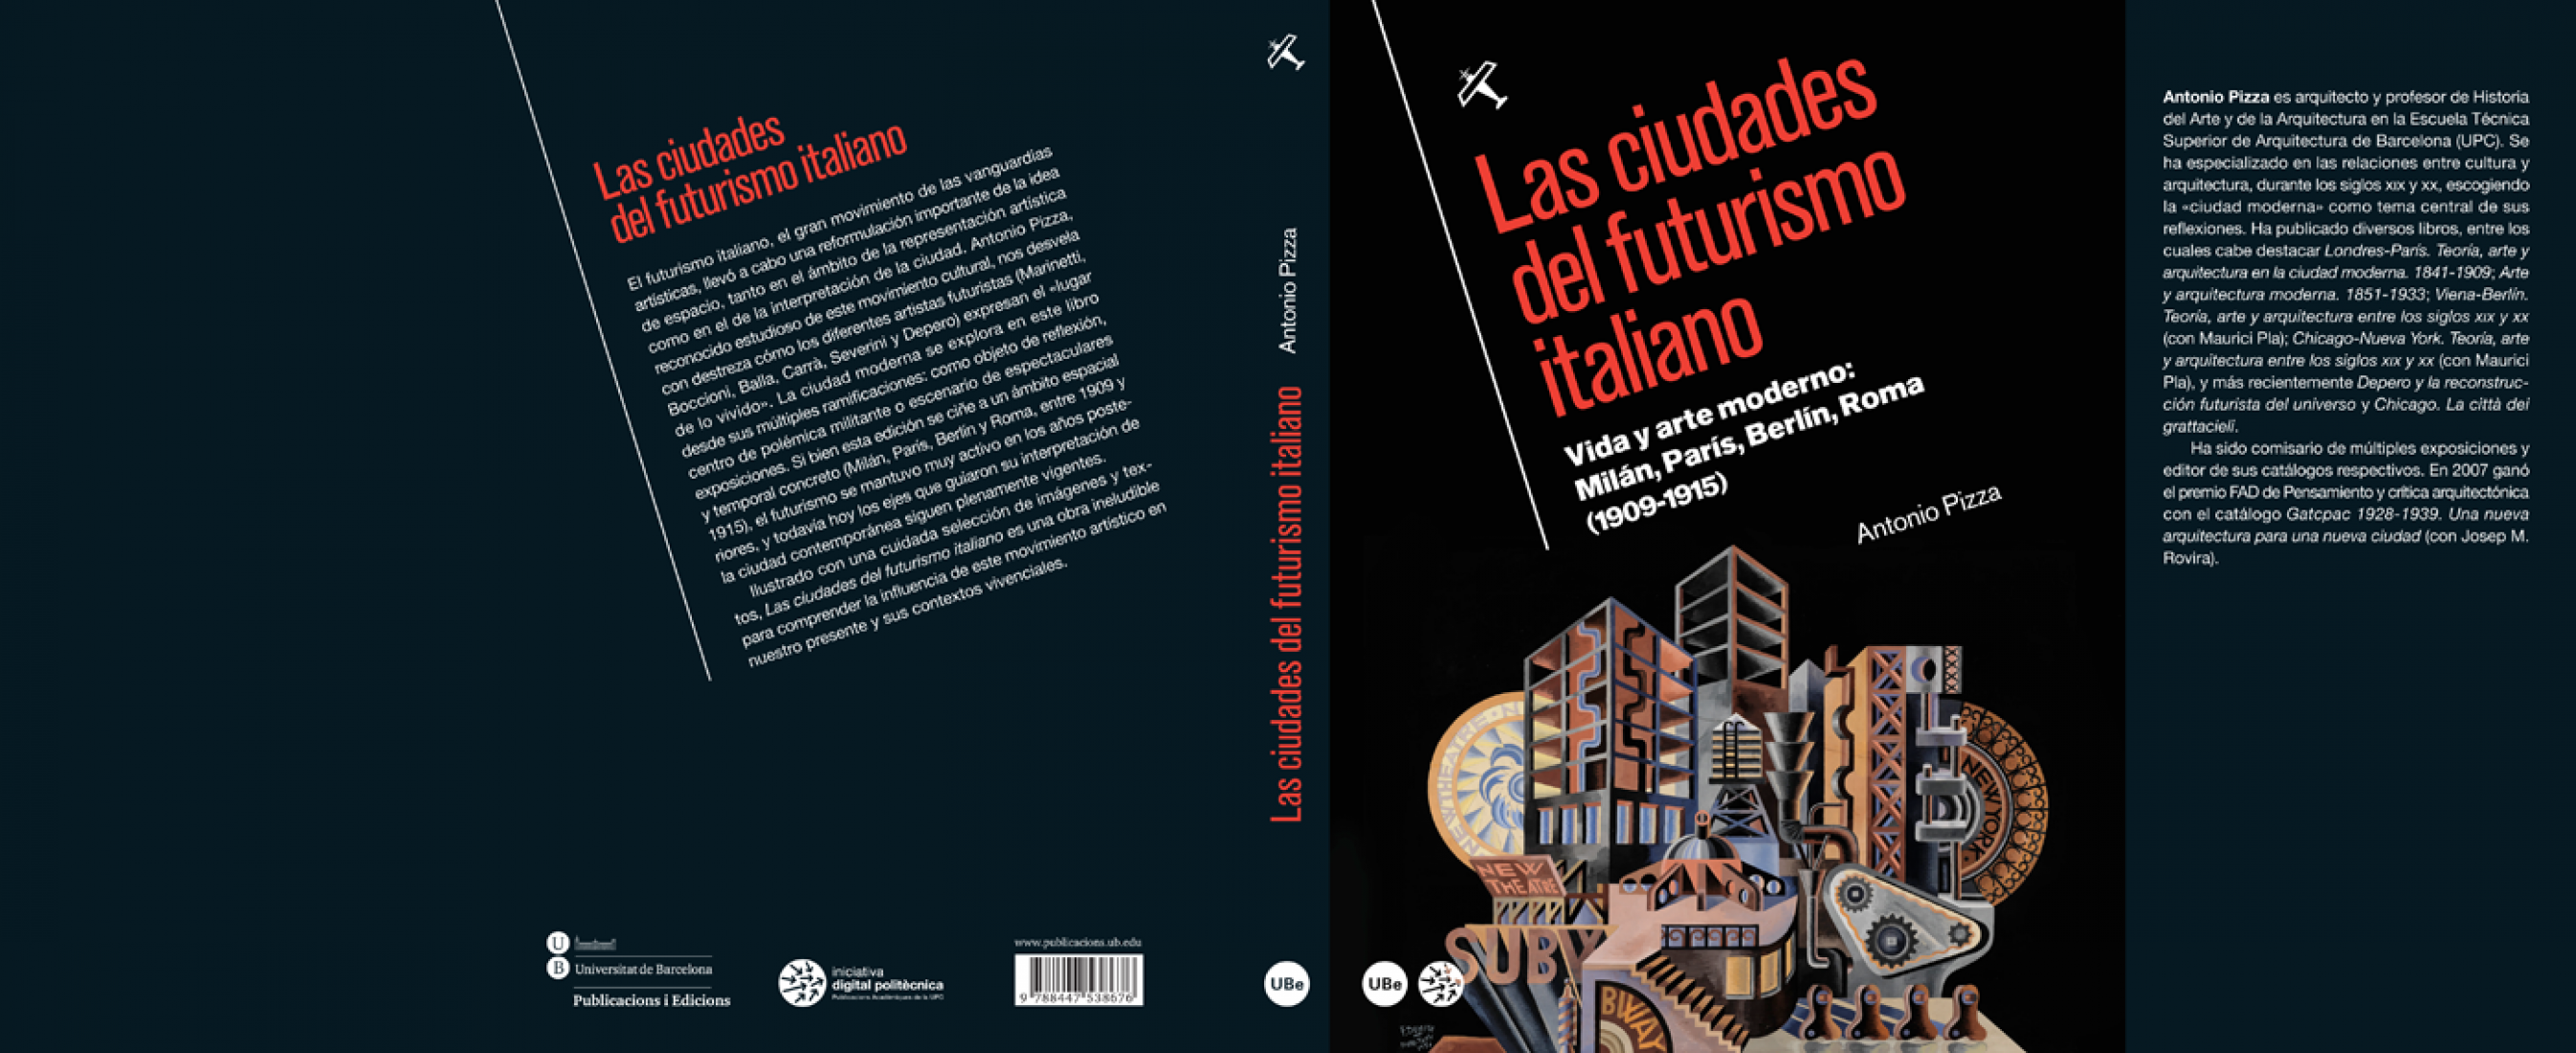 Las ciudades del futurismo italiano por Antonio Pizza.